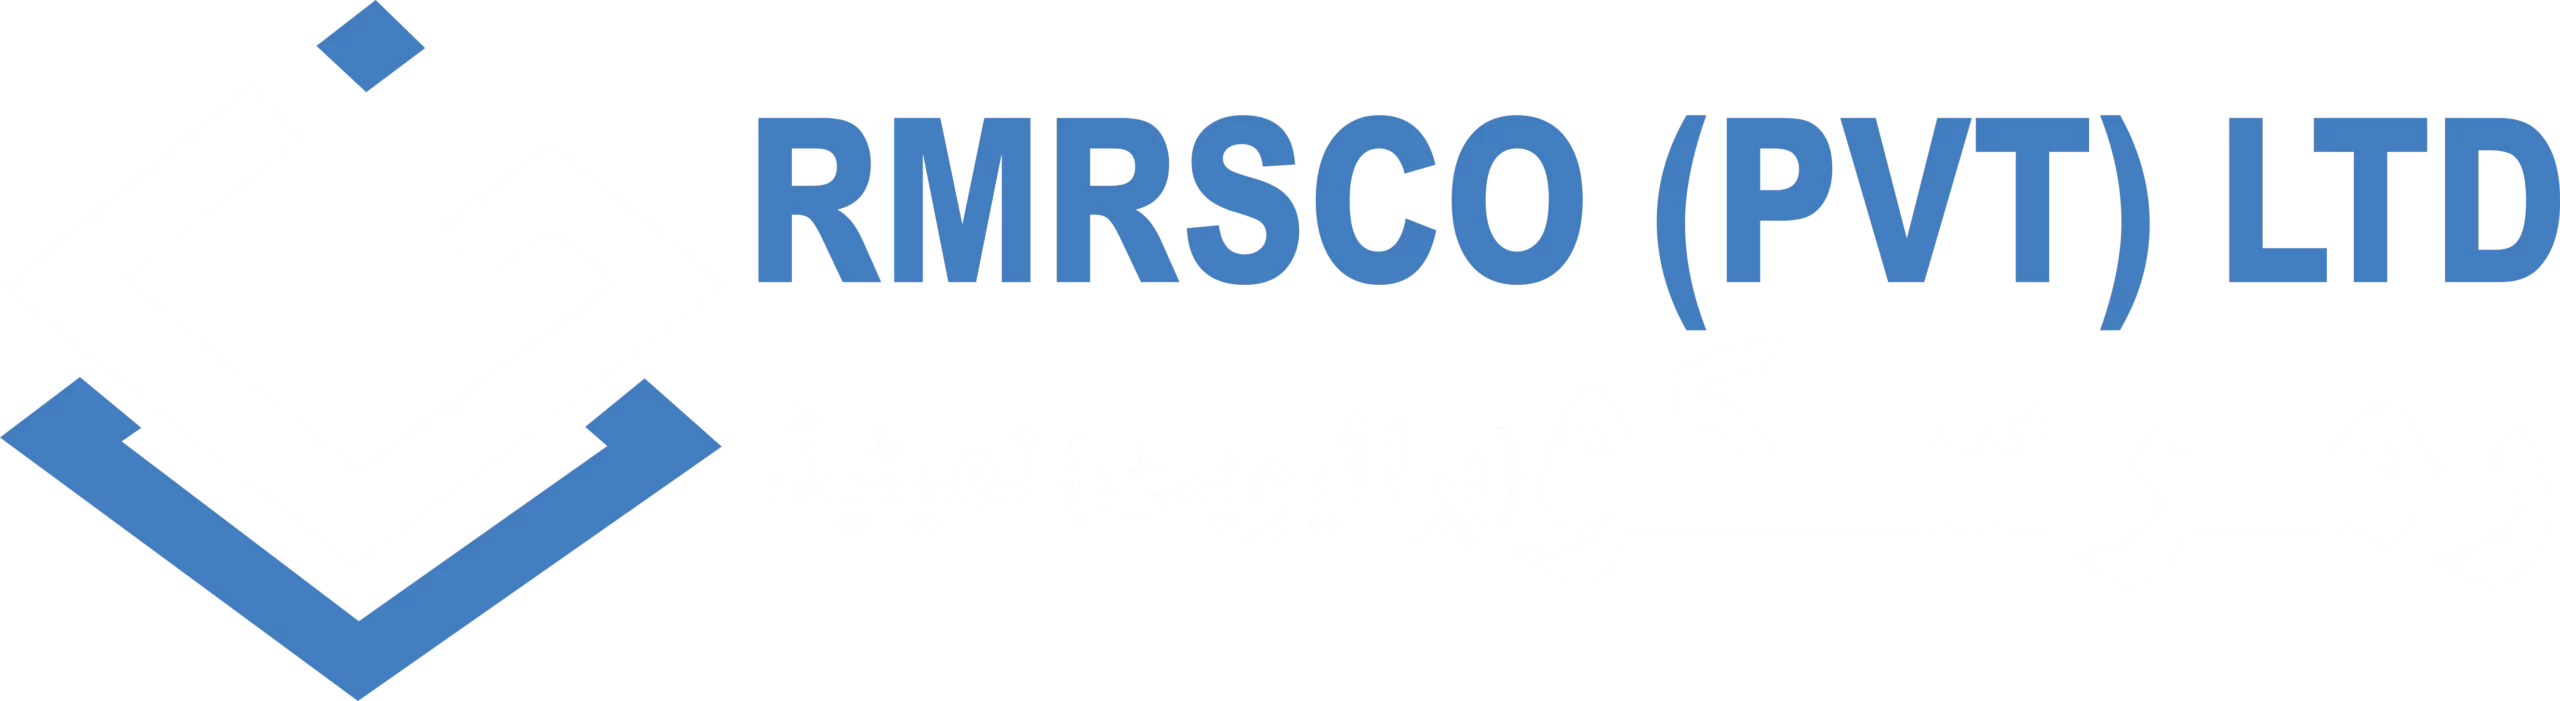 RMRSCO Pvt Ltd